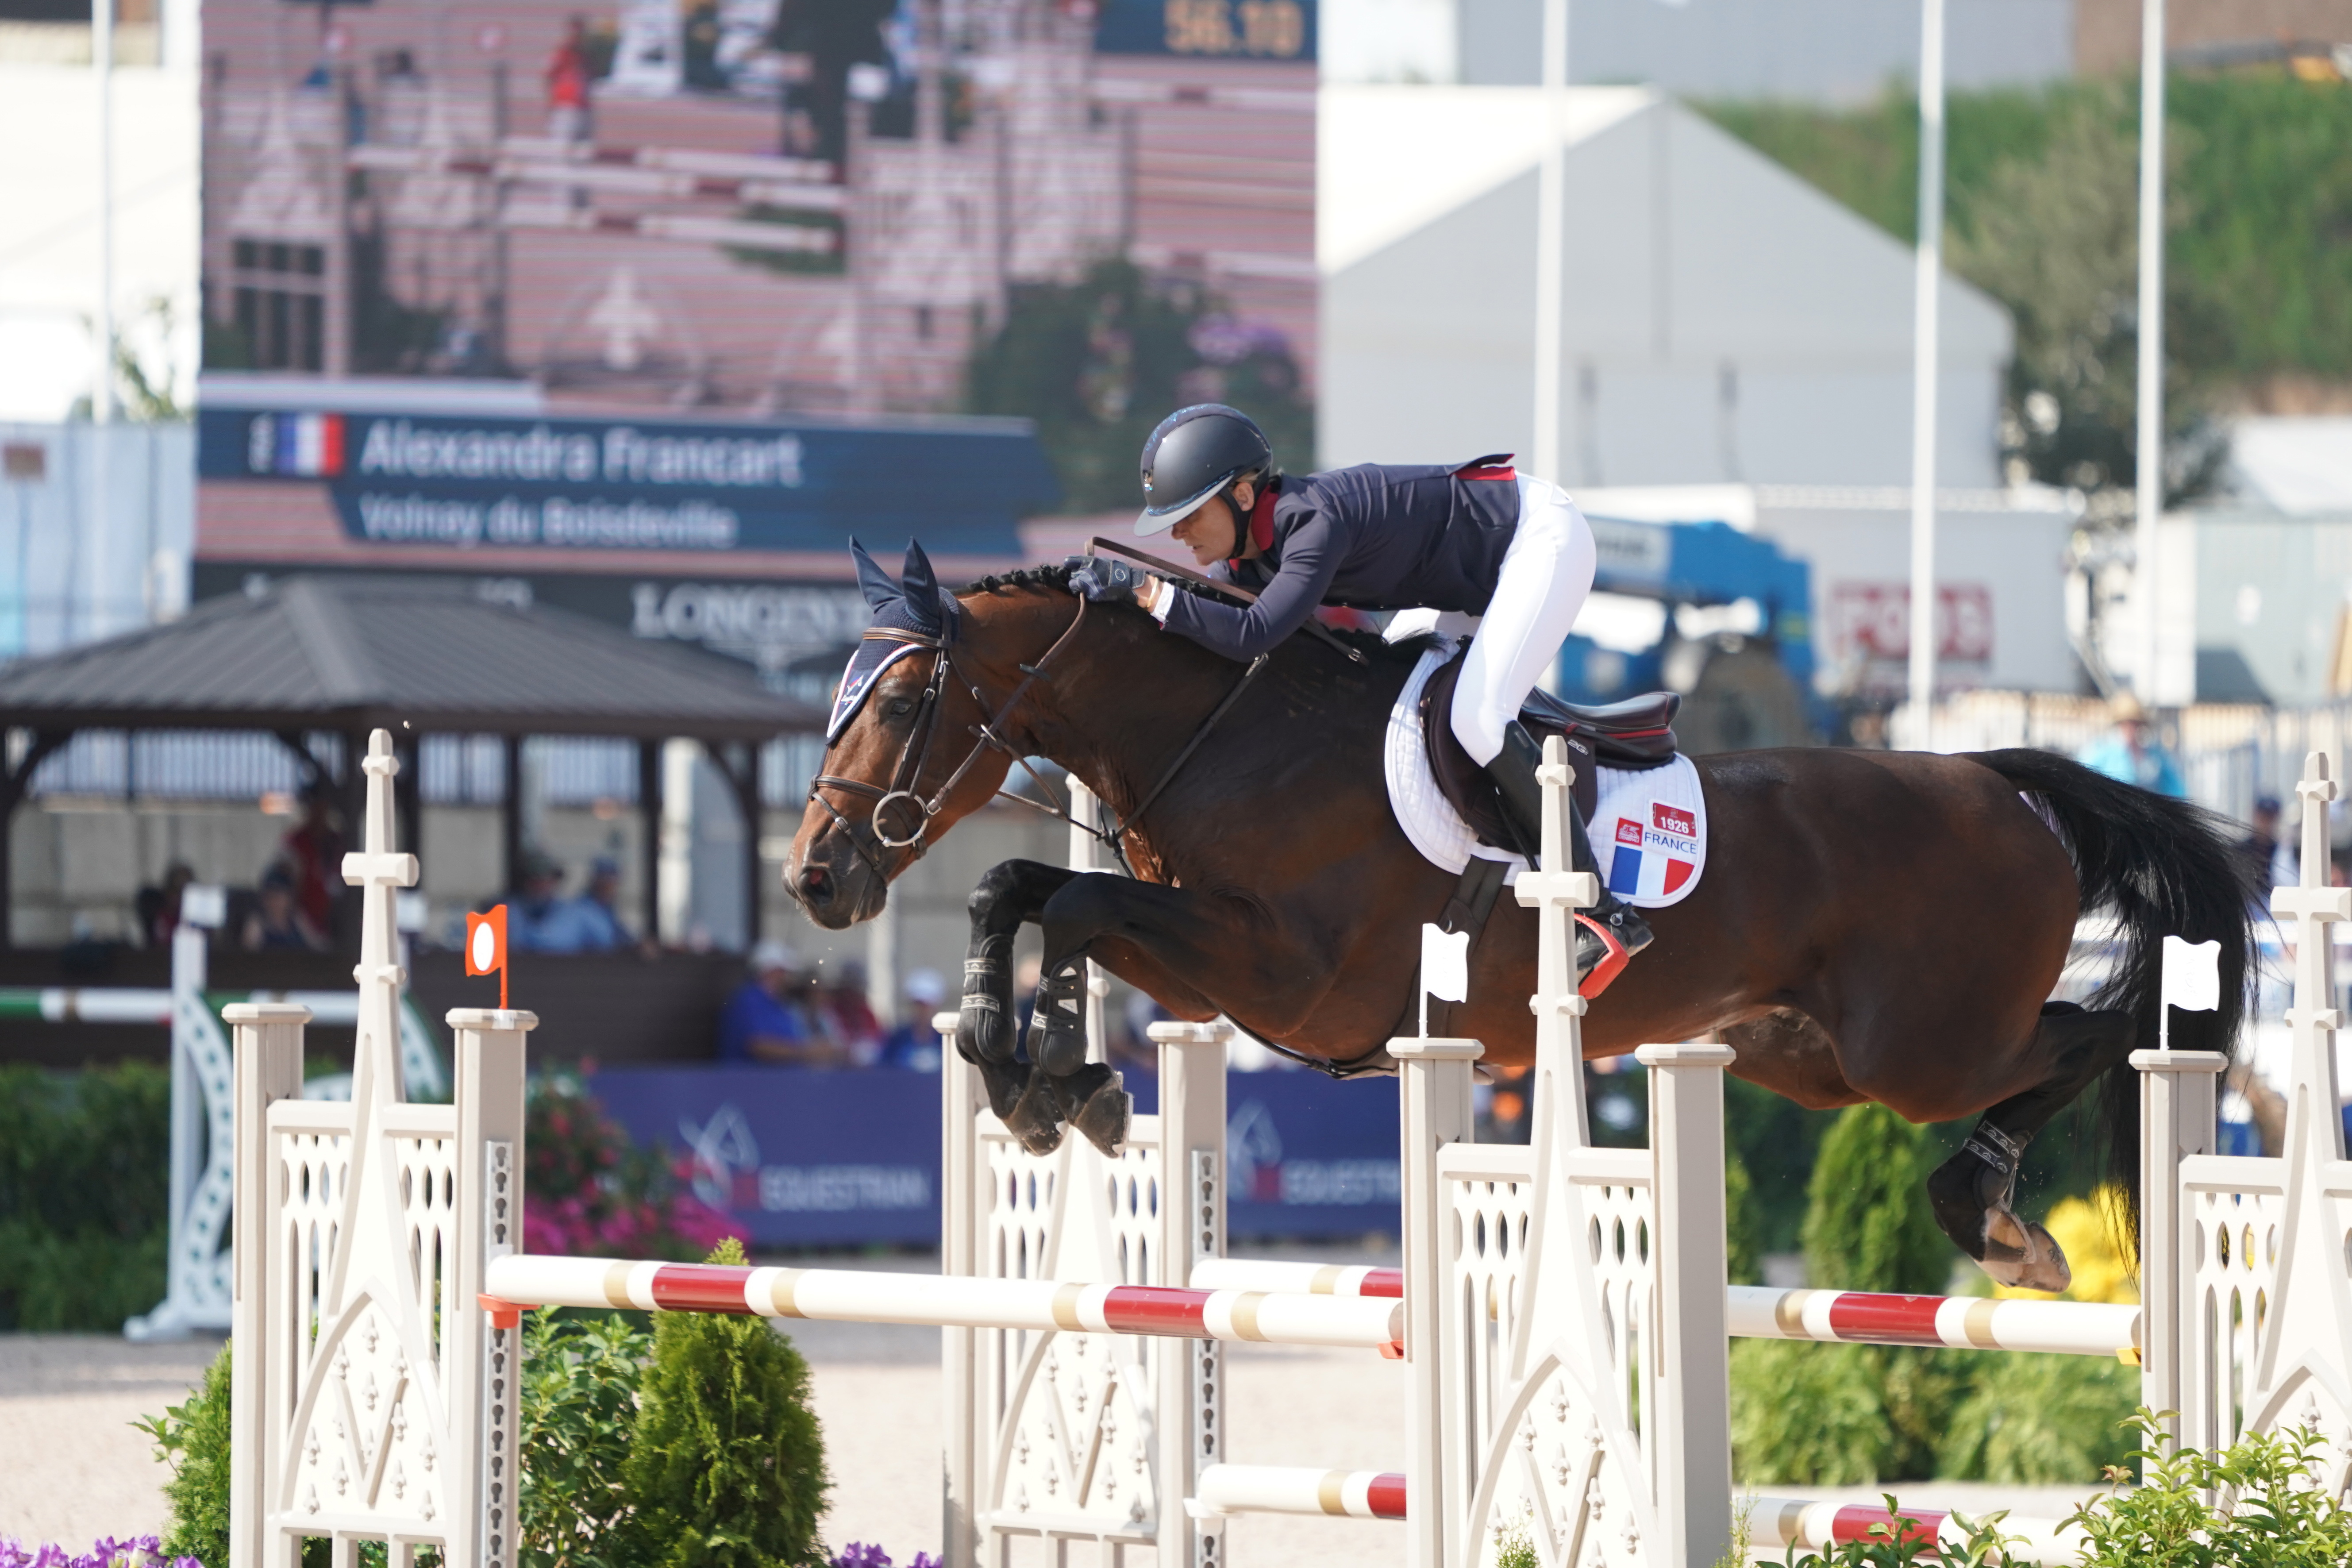 Alexandra Francart et Volnay du Boisdeville aux Jeux équestres mondiaux de Tryon en 2018